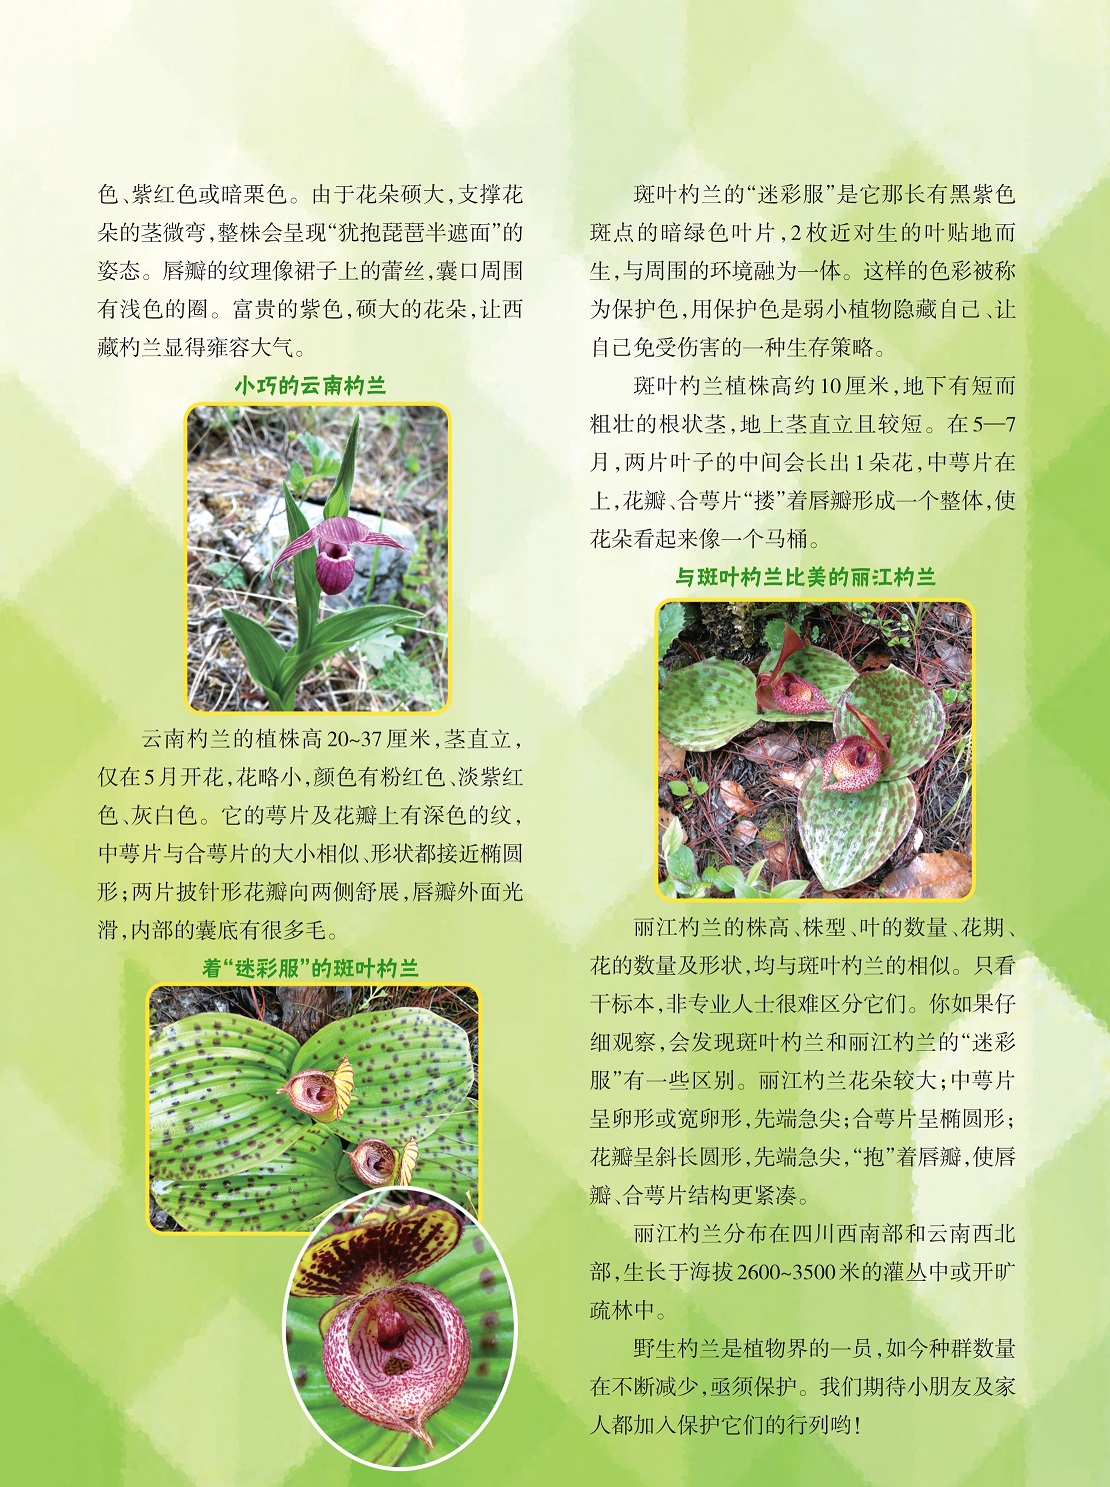 用保护色是弱小植物隐藏自己的生存策略,与斑叶杓兰比美的丽江杓兰